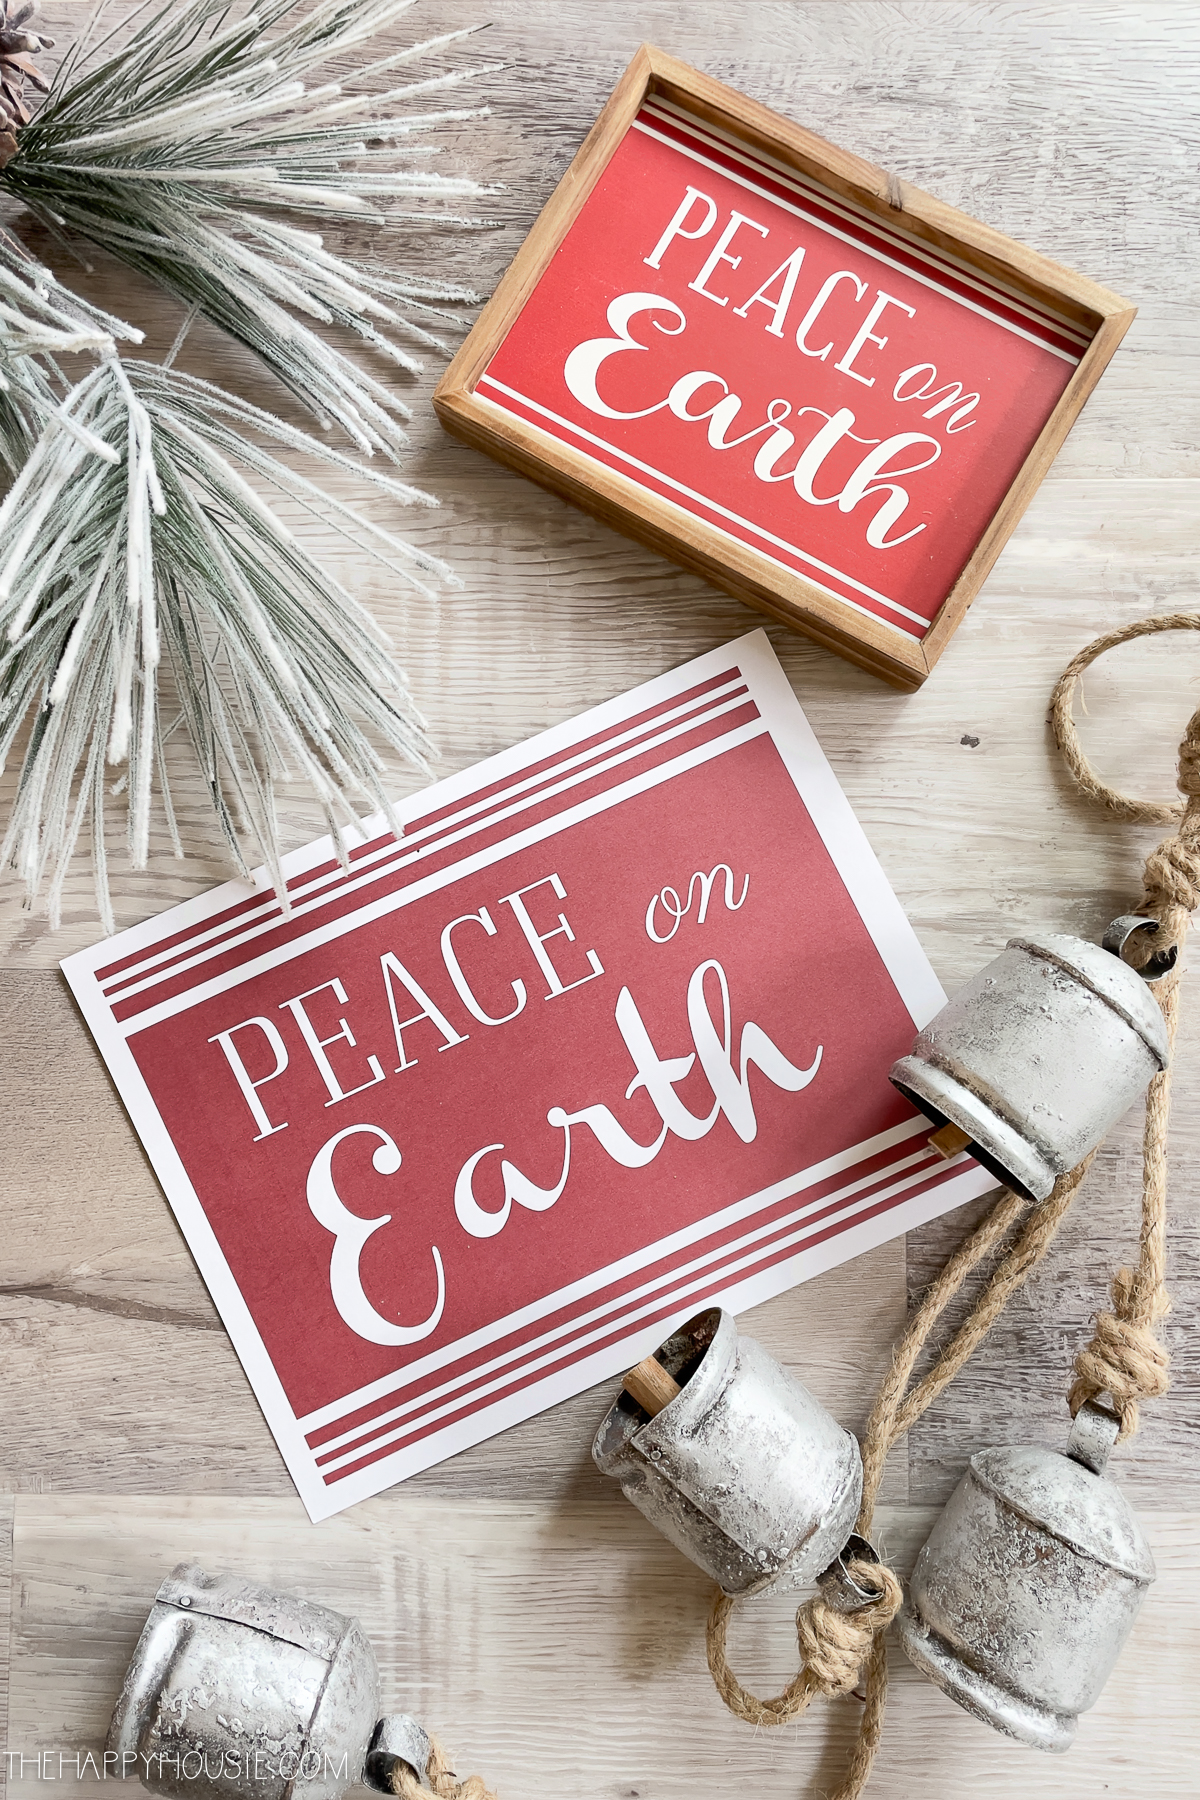 Free Printable Christmas Sign: Peace on Earth